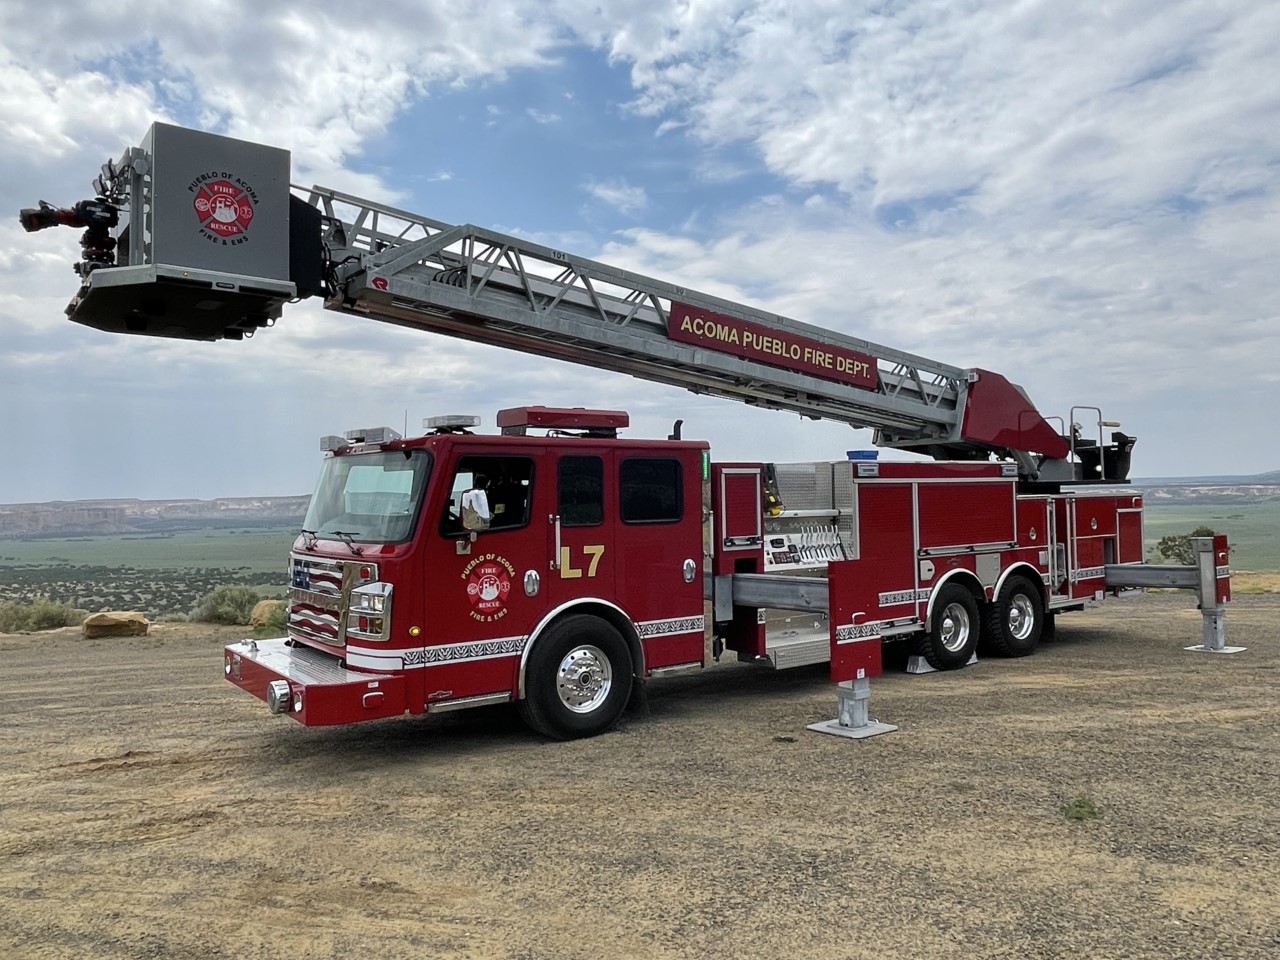 Acoma Pueblo Fire Department Truck